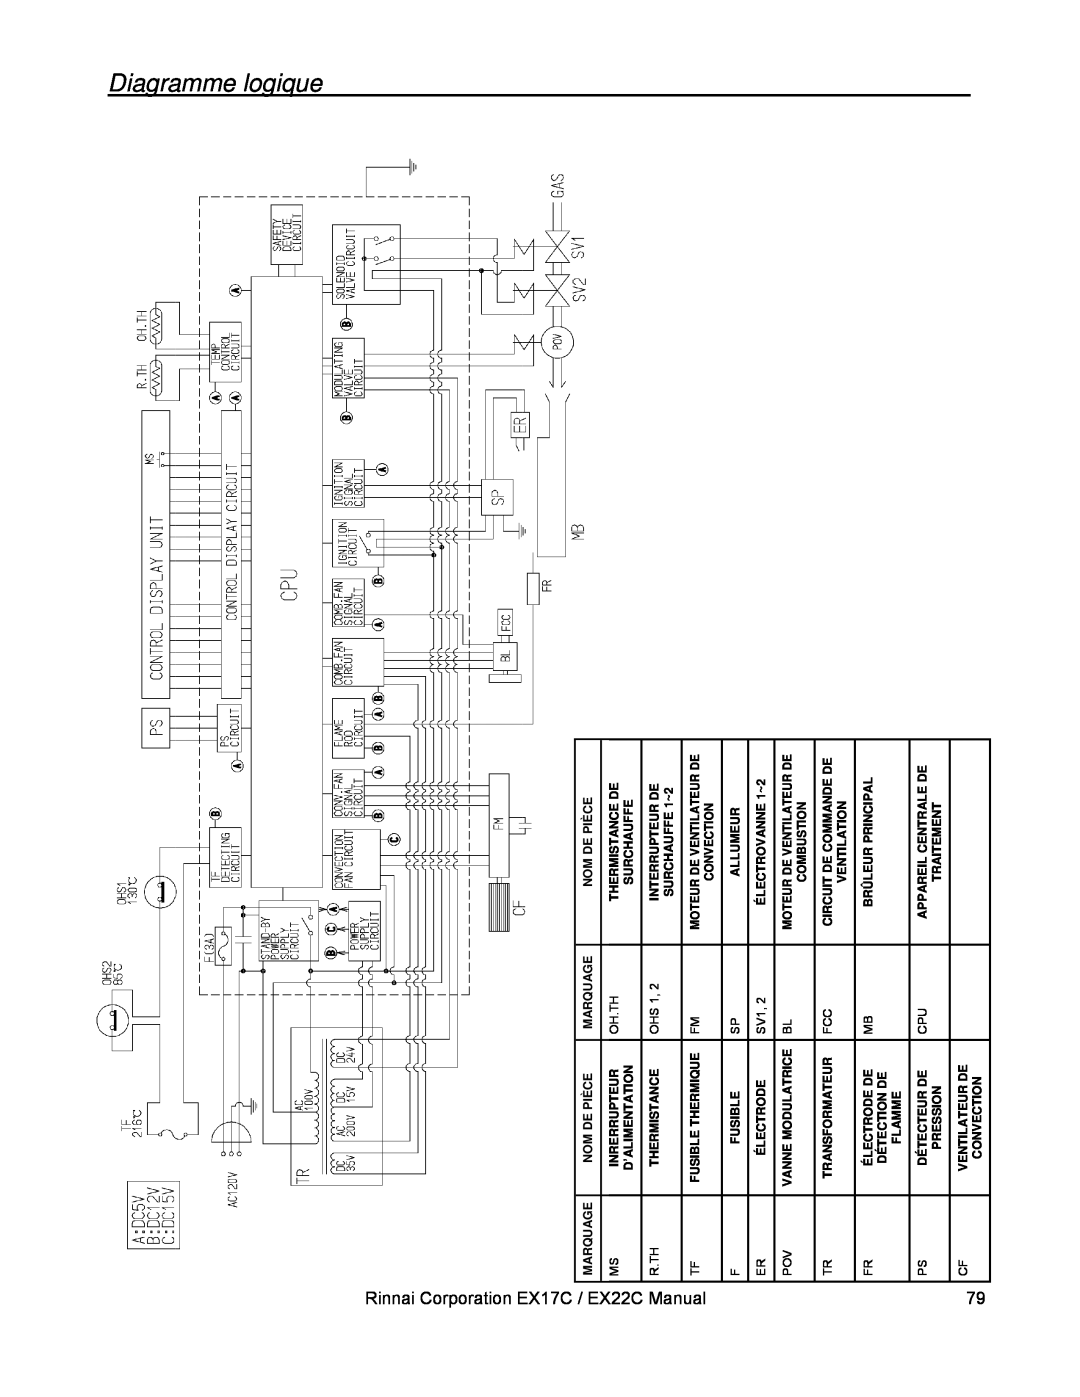 Rinnai EX17C (RHFE-434FTA), EX22C (RHFE-559FTA) Diagramme logique, Rinnai Corporation EX17C / EX22C Manual 79 